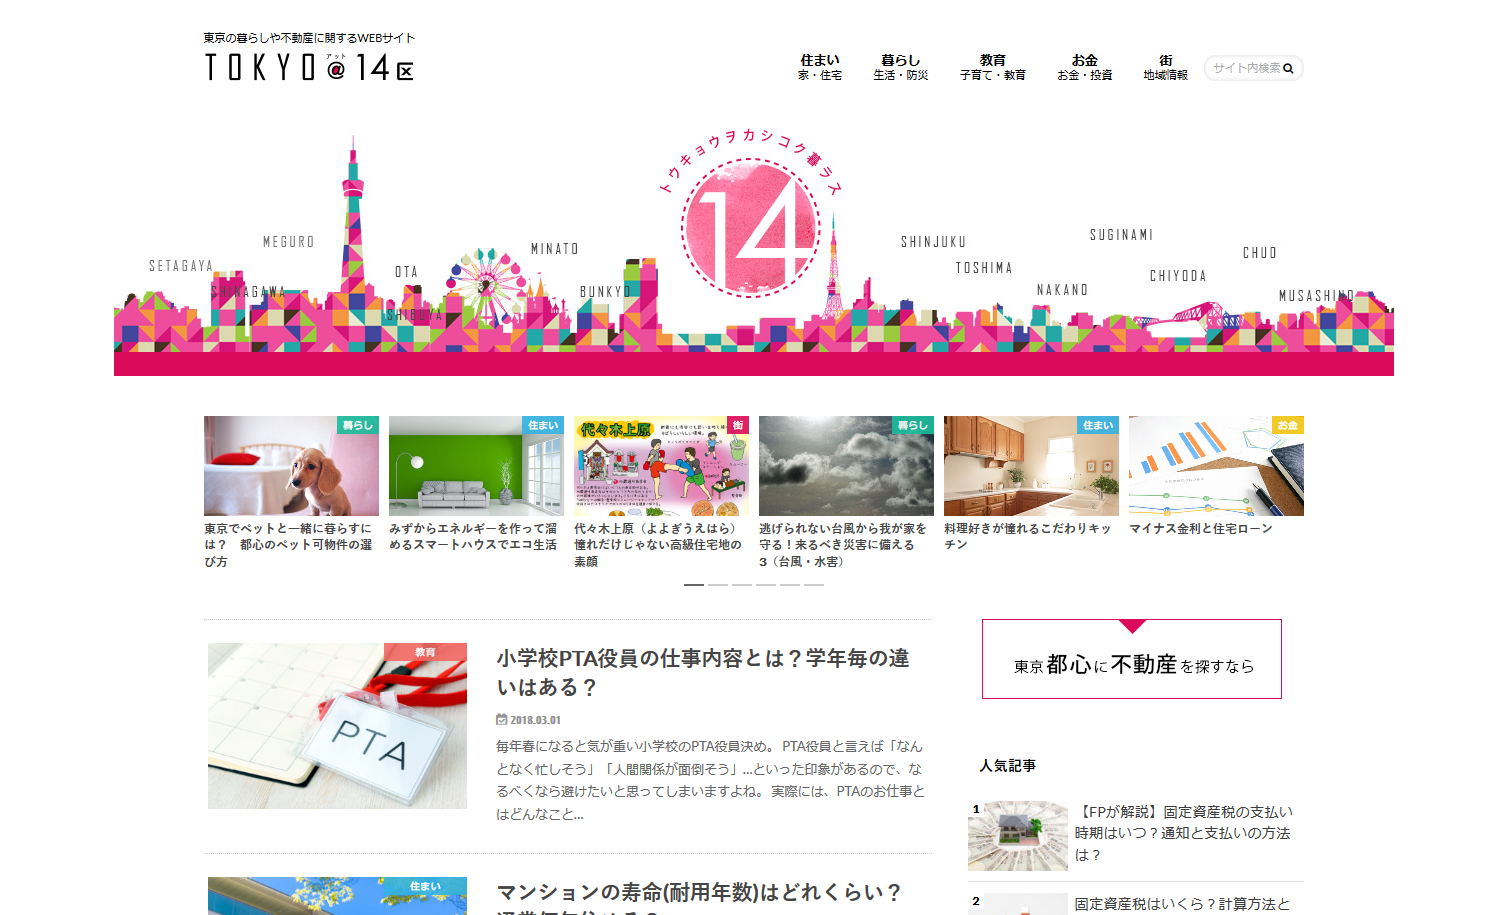 TOKYO@14区 I 東京の暮らしや不動産に関するWEBサイト - http___www.juken-net.com_main_